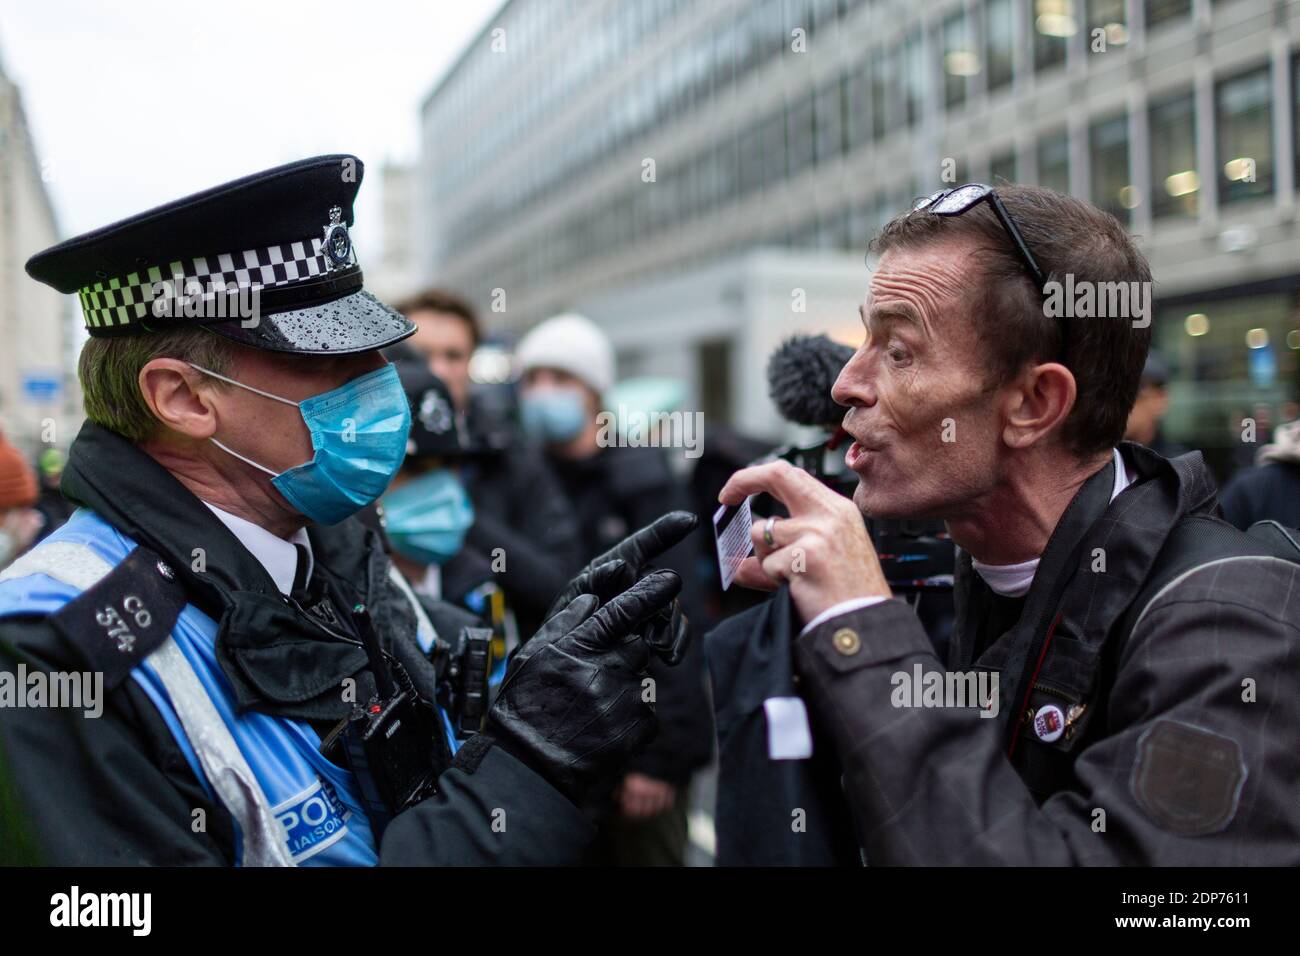 Un uomo visualizza una carta stampa ad un agente di polizia durante la protesta contro il vaccino COVID-19, Westminster, Londra, 14 dicembre 2020 Foto Stock